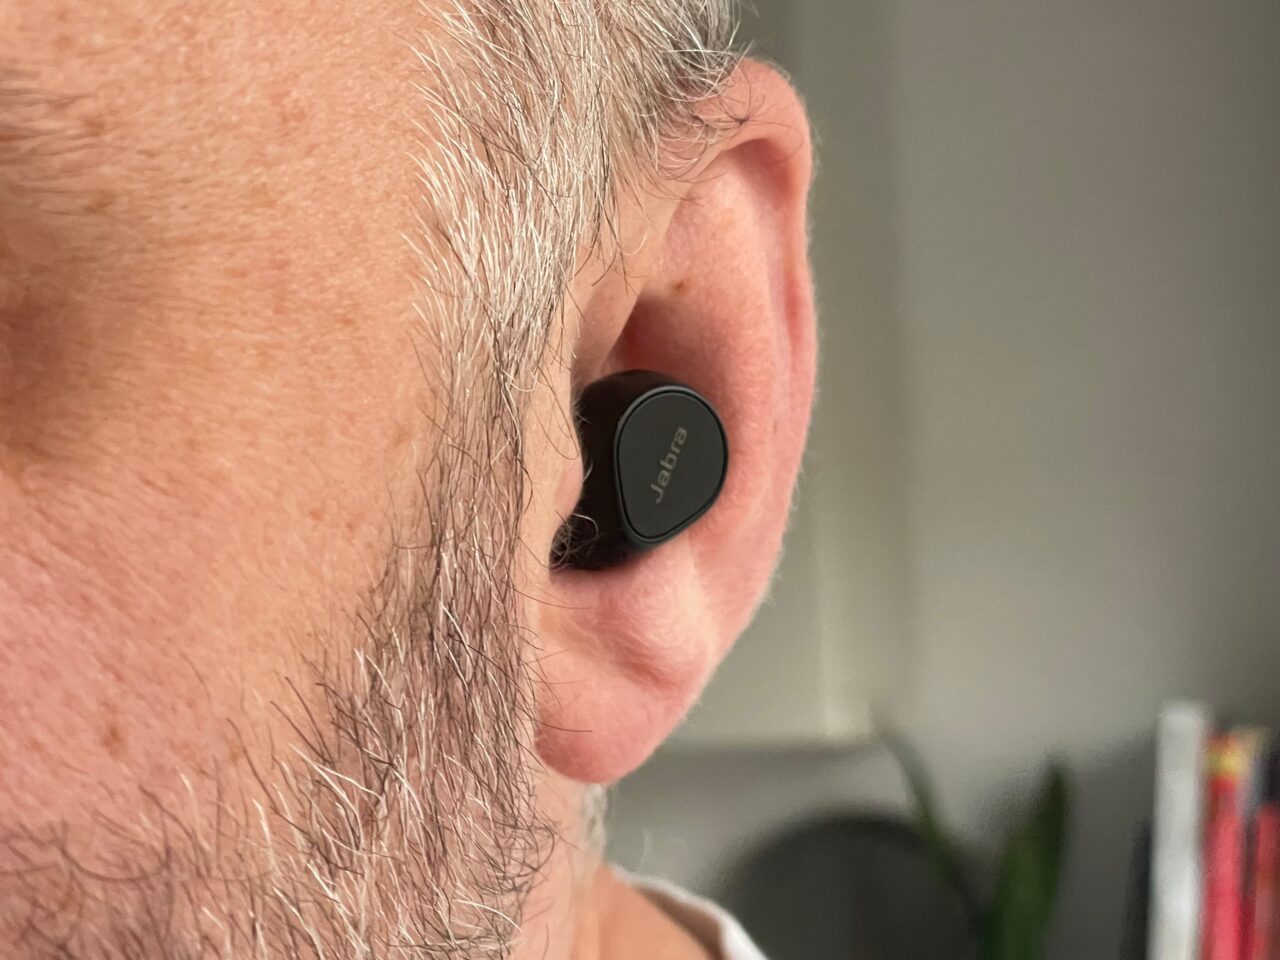 Częściowy widok mężczyzny z siwym zarostem na twarzy i słuchawką w uchu.